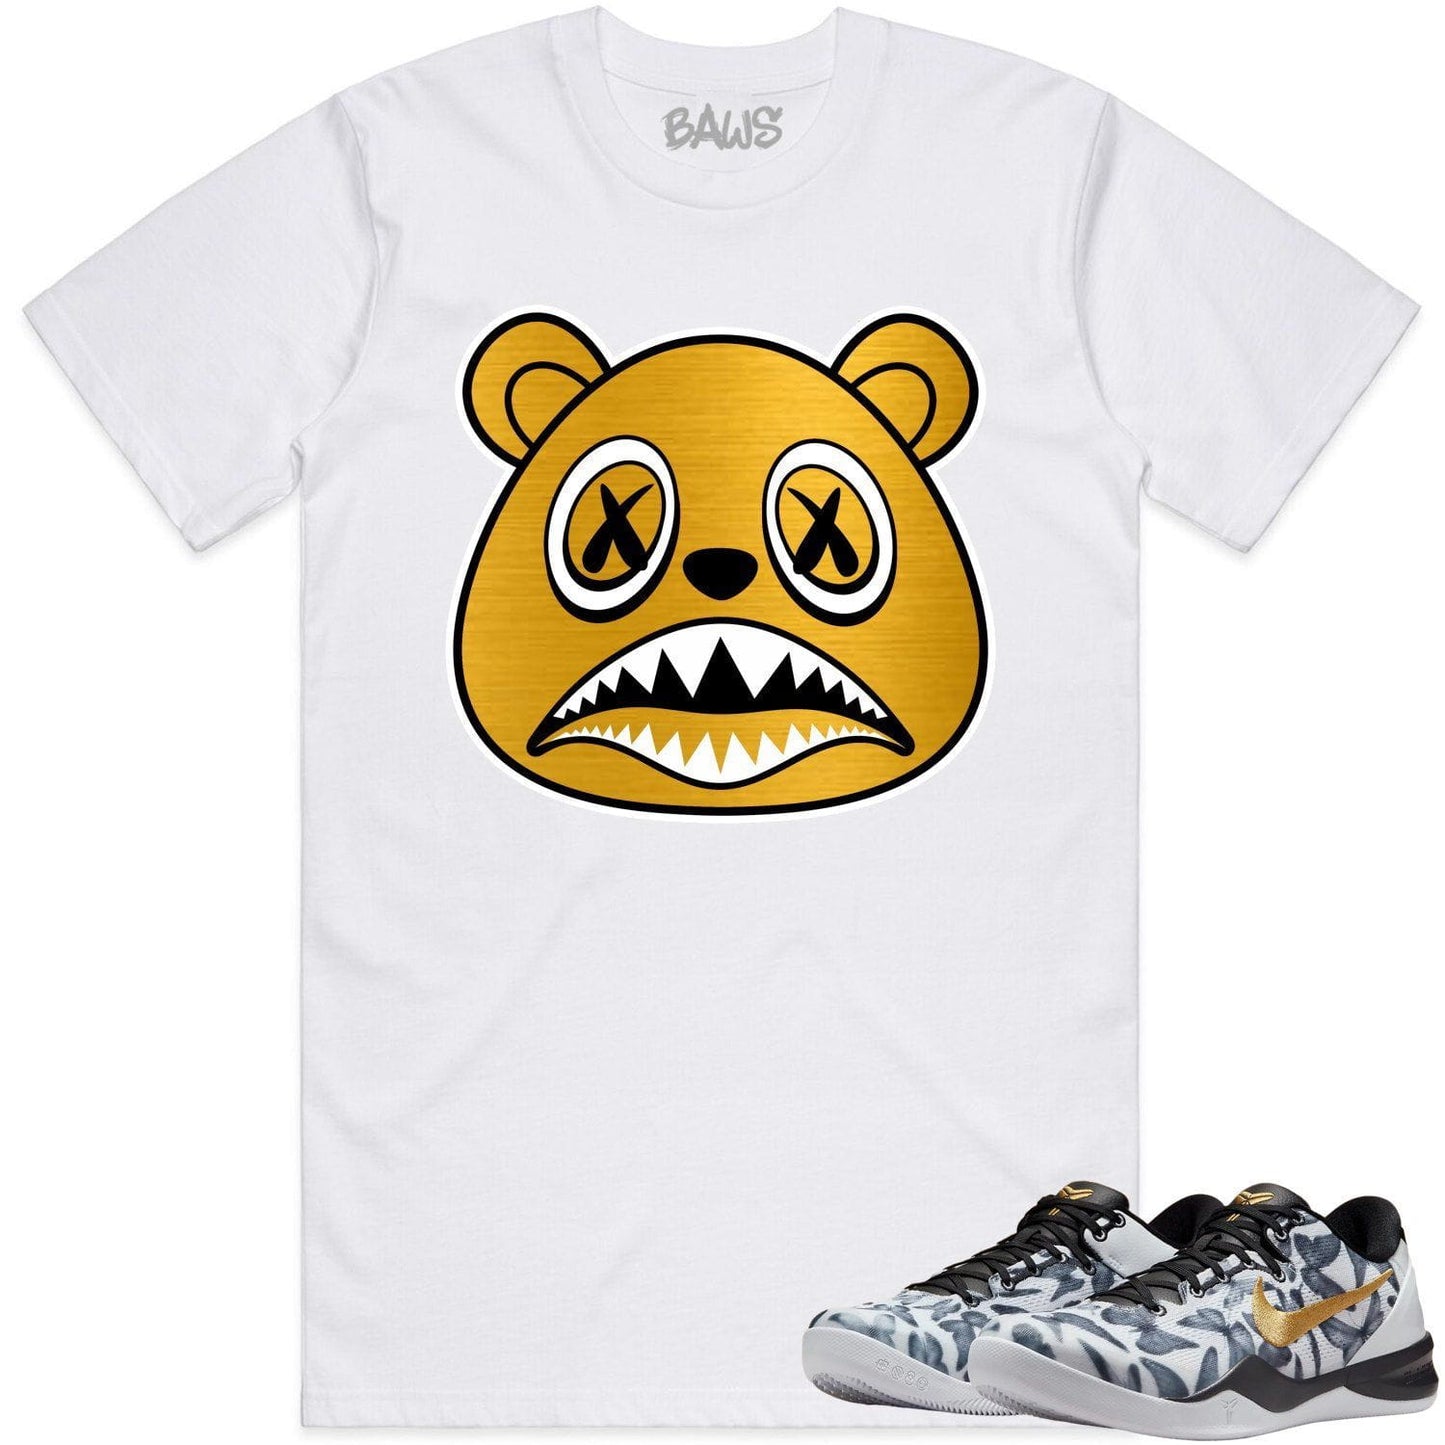 Mambacita 8ss Shirt - Kobe 8 Mambacita Gigi Shirts - Baws Bear